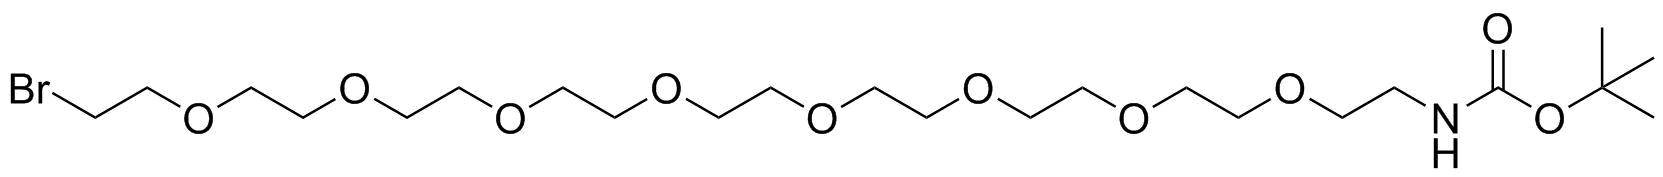 N-Boc-PEG8-bromide